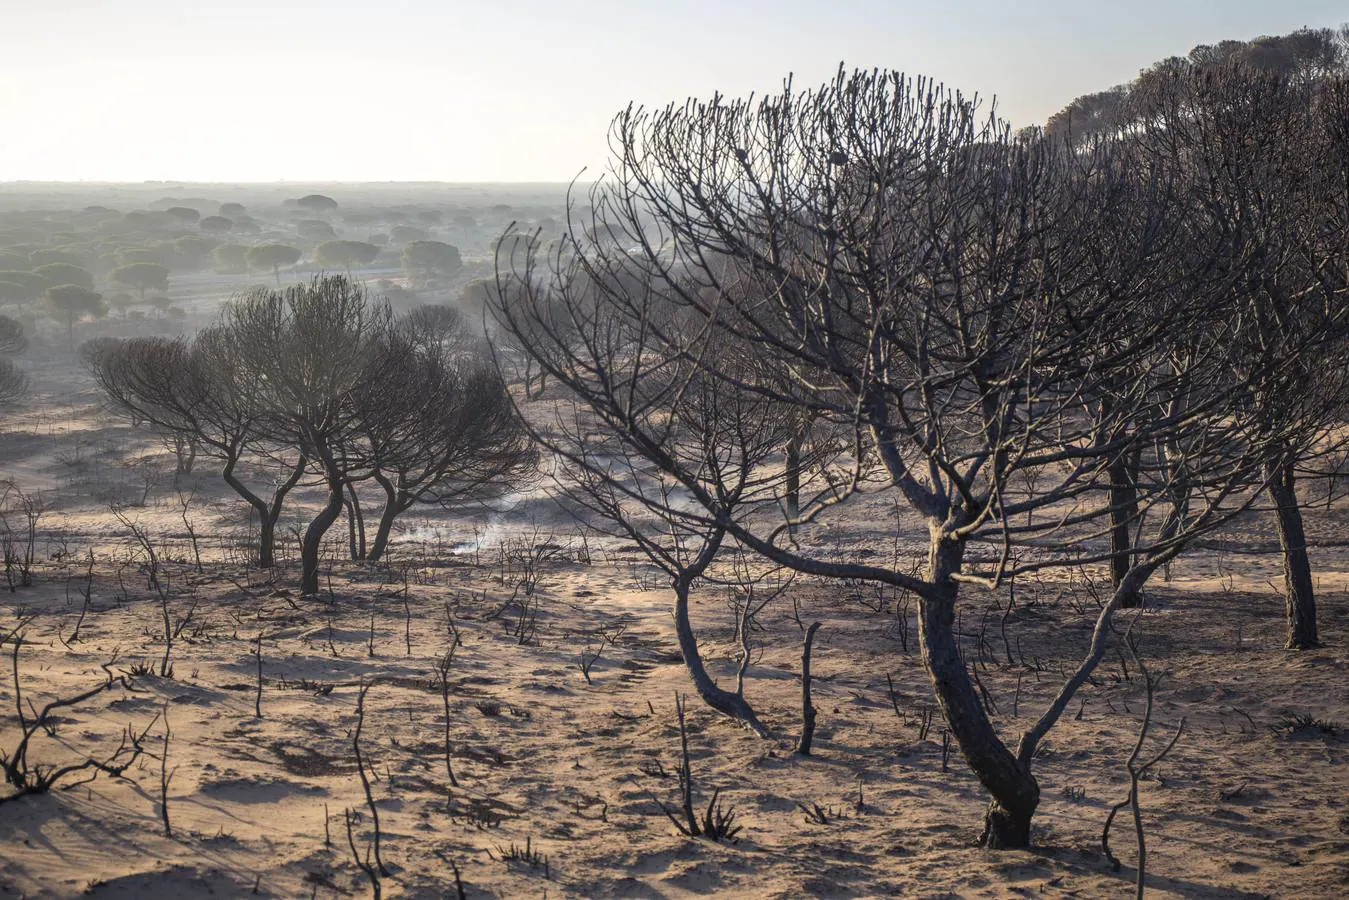 El director de Doñana cree improbable que el fuego originado en Moguer pueda afectar al Parque Nacional